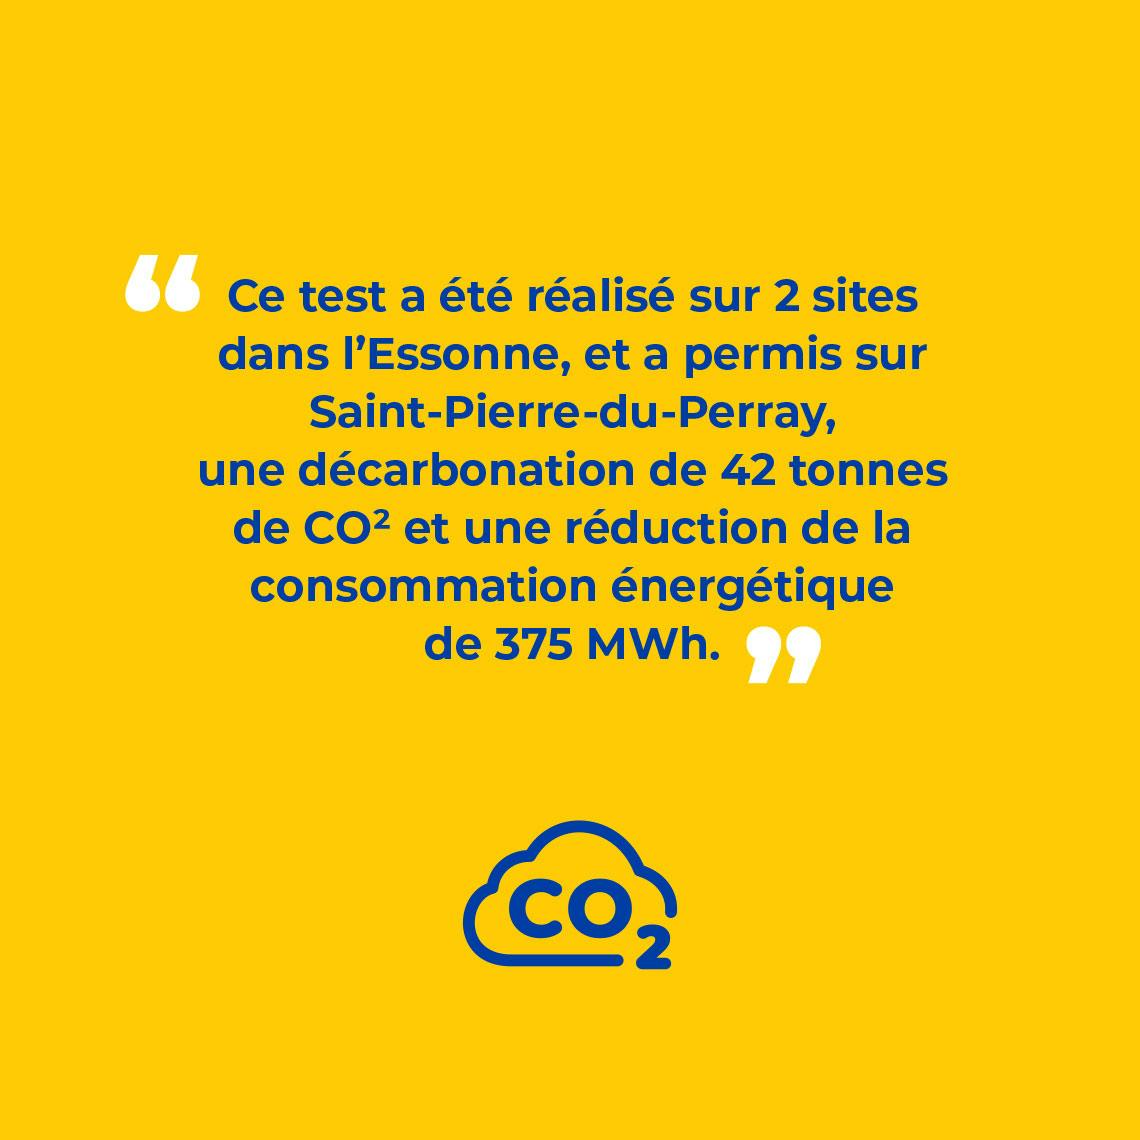 Ce test a été réalisé sur 2 sites dans l’Essonne, et a permis sur Saint-Pierre-du-Perray, une décarbonation de 42 tonnes de CO² et une réduction de la consommation énergétique de 375 MWh.